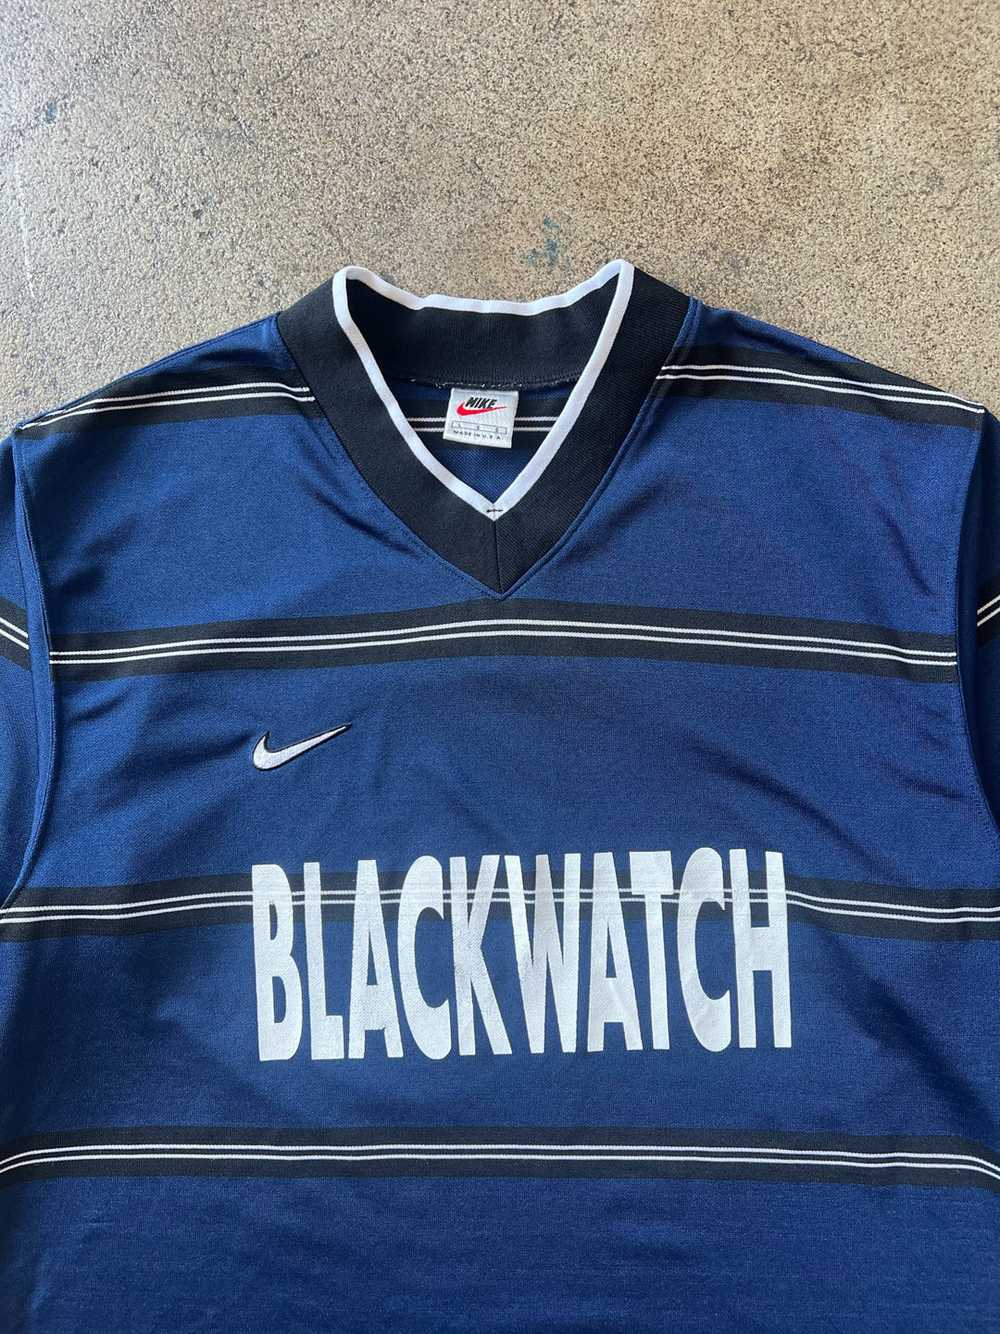 1990s Nike Blackwatch Jersey Shirt - image 2